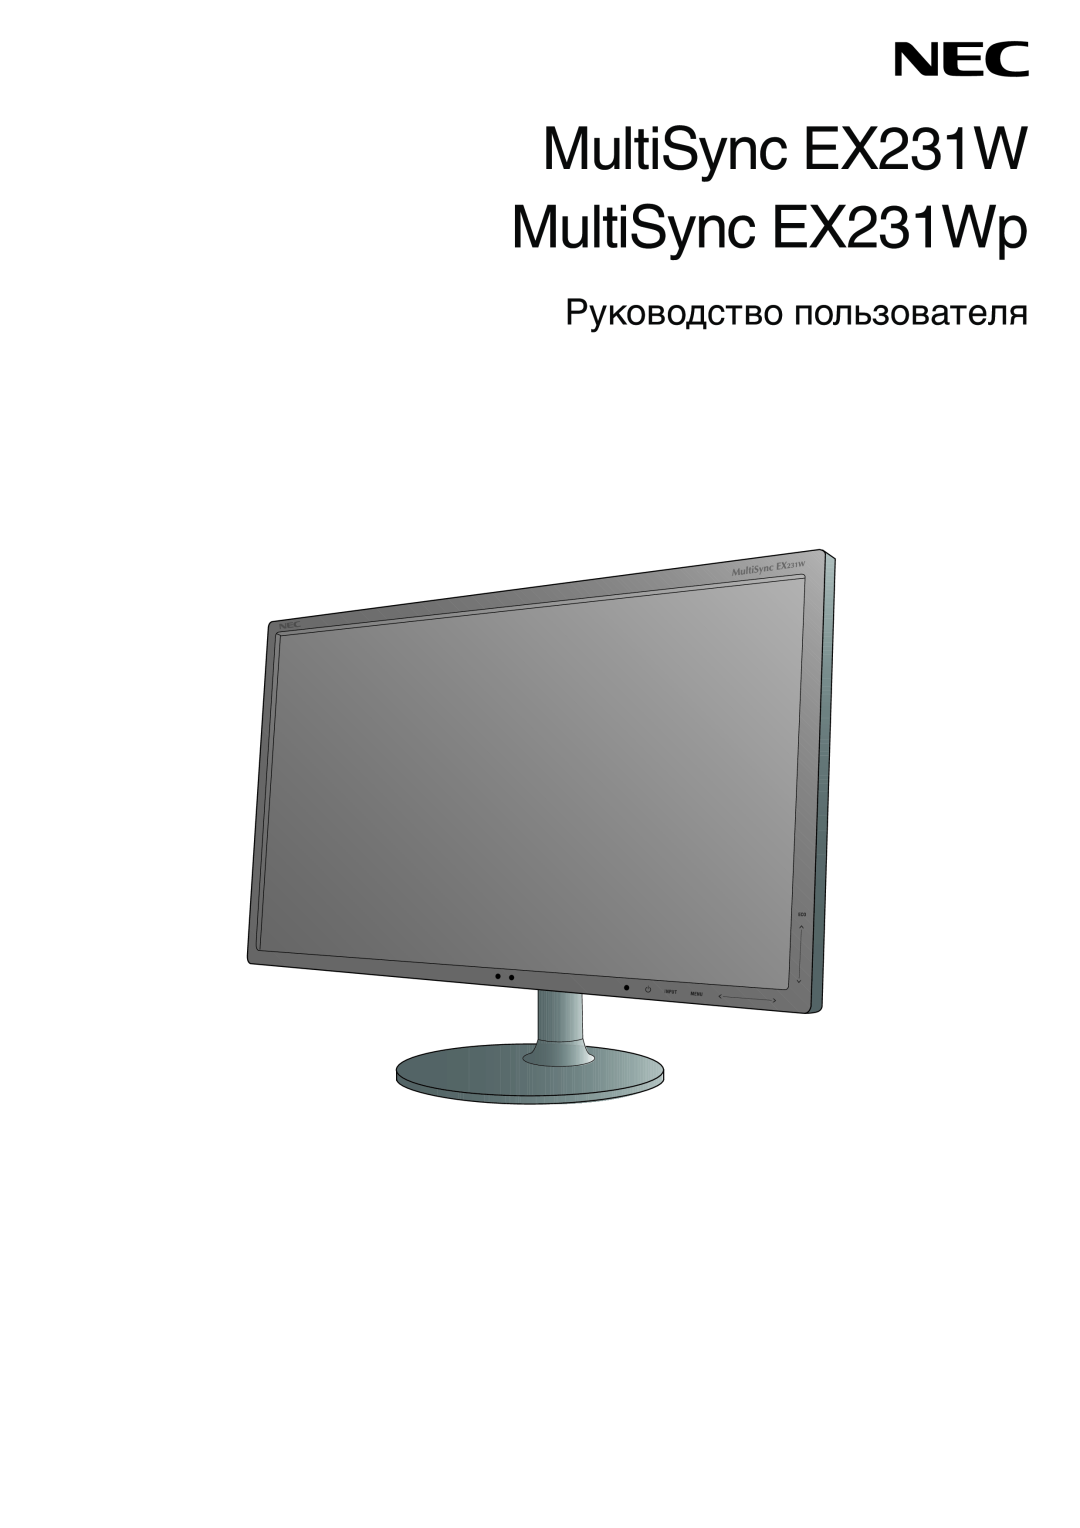 NEC EX231WP manual MultiSync EX231W MultiSync EX231Wp, Руководство пользователя 